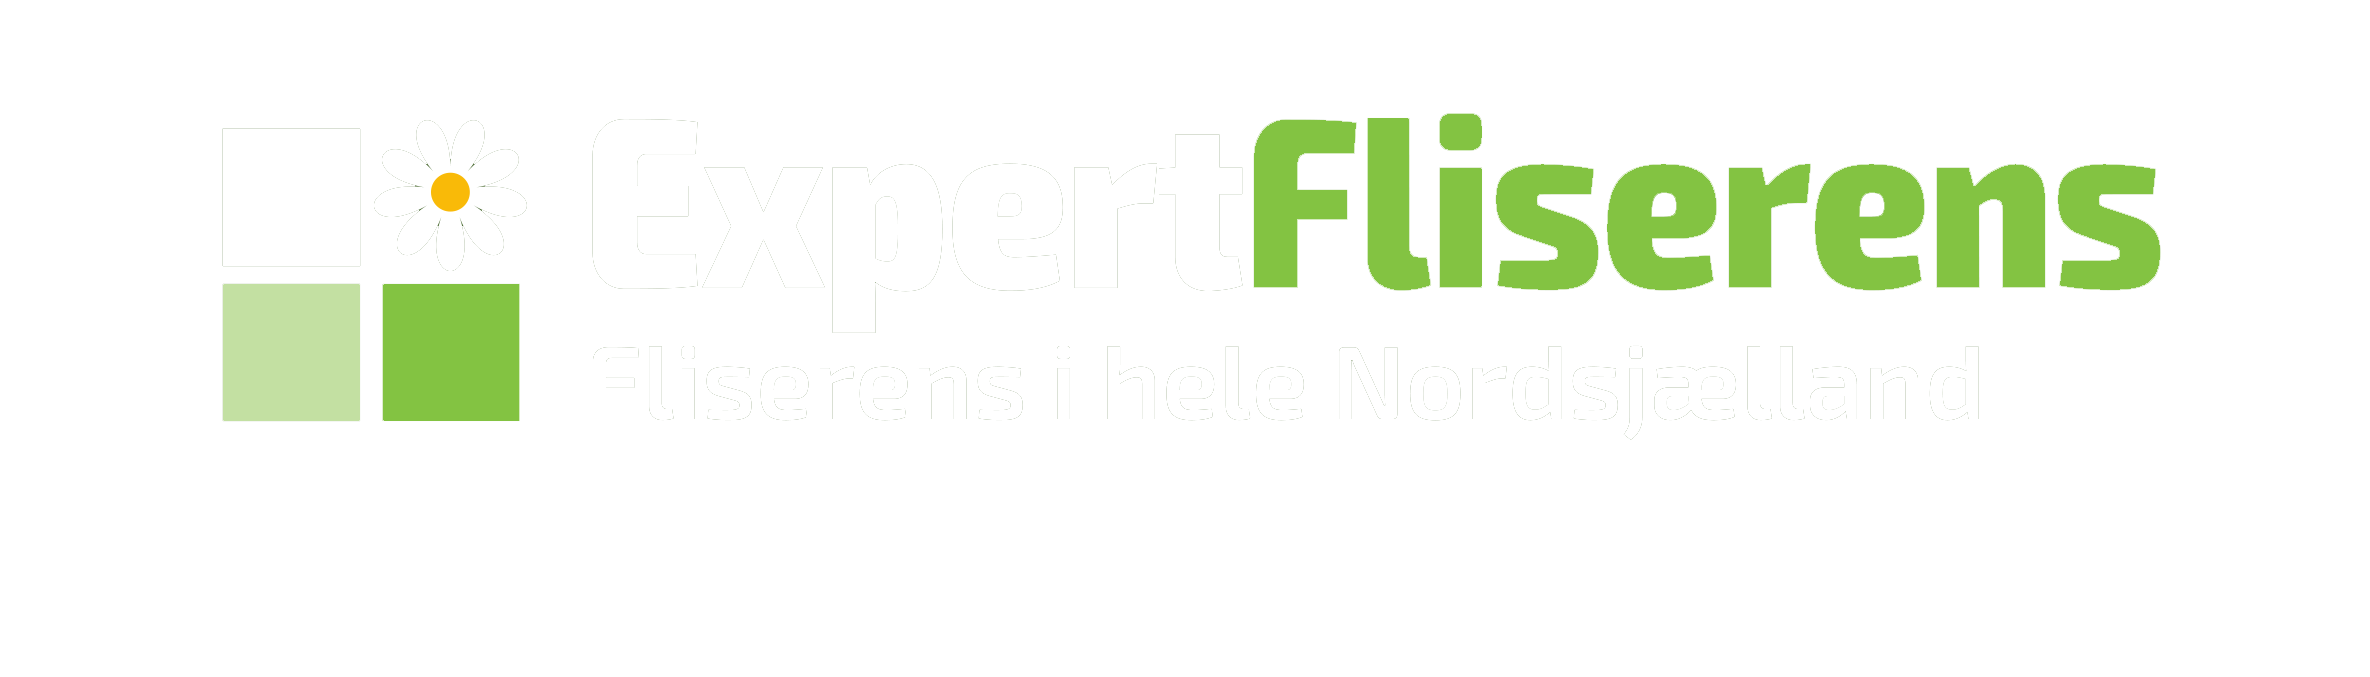 expert fliserens - logo